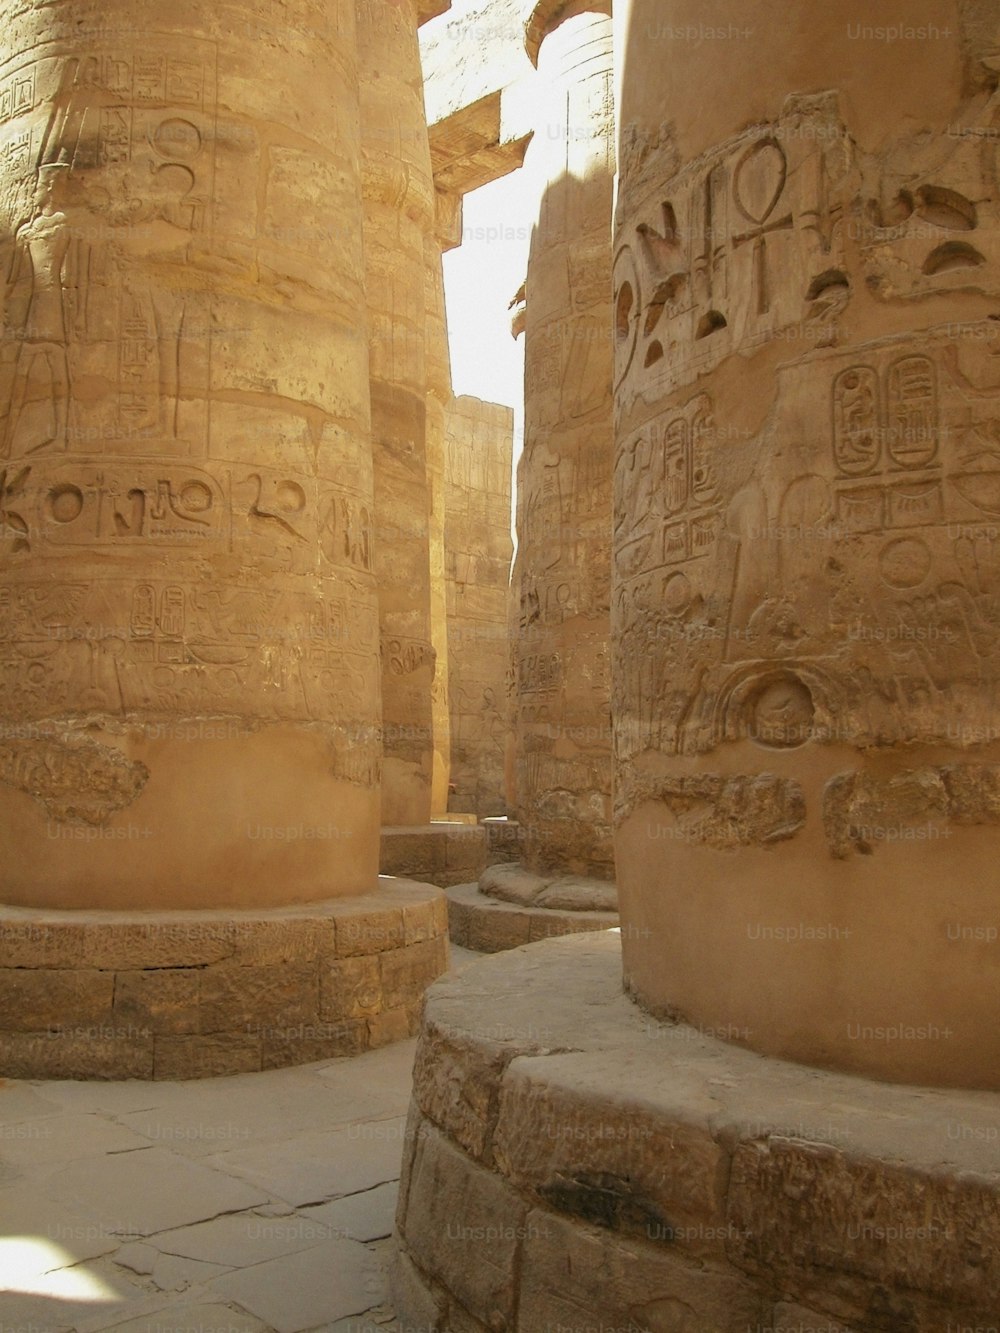 寺院の柱には古代エジプトの文章が刻まれています